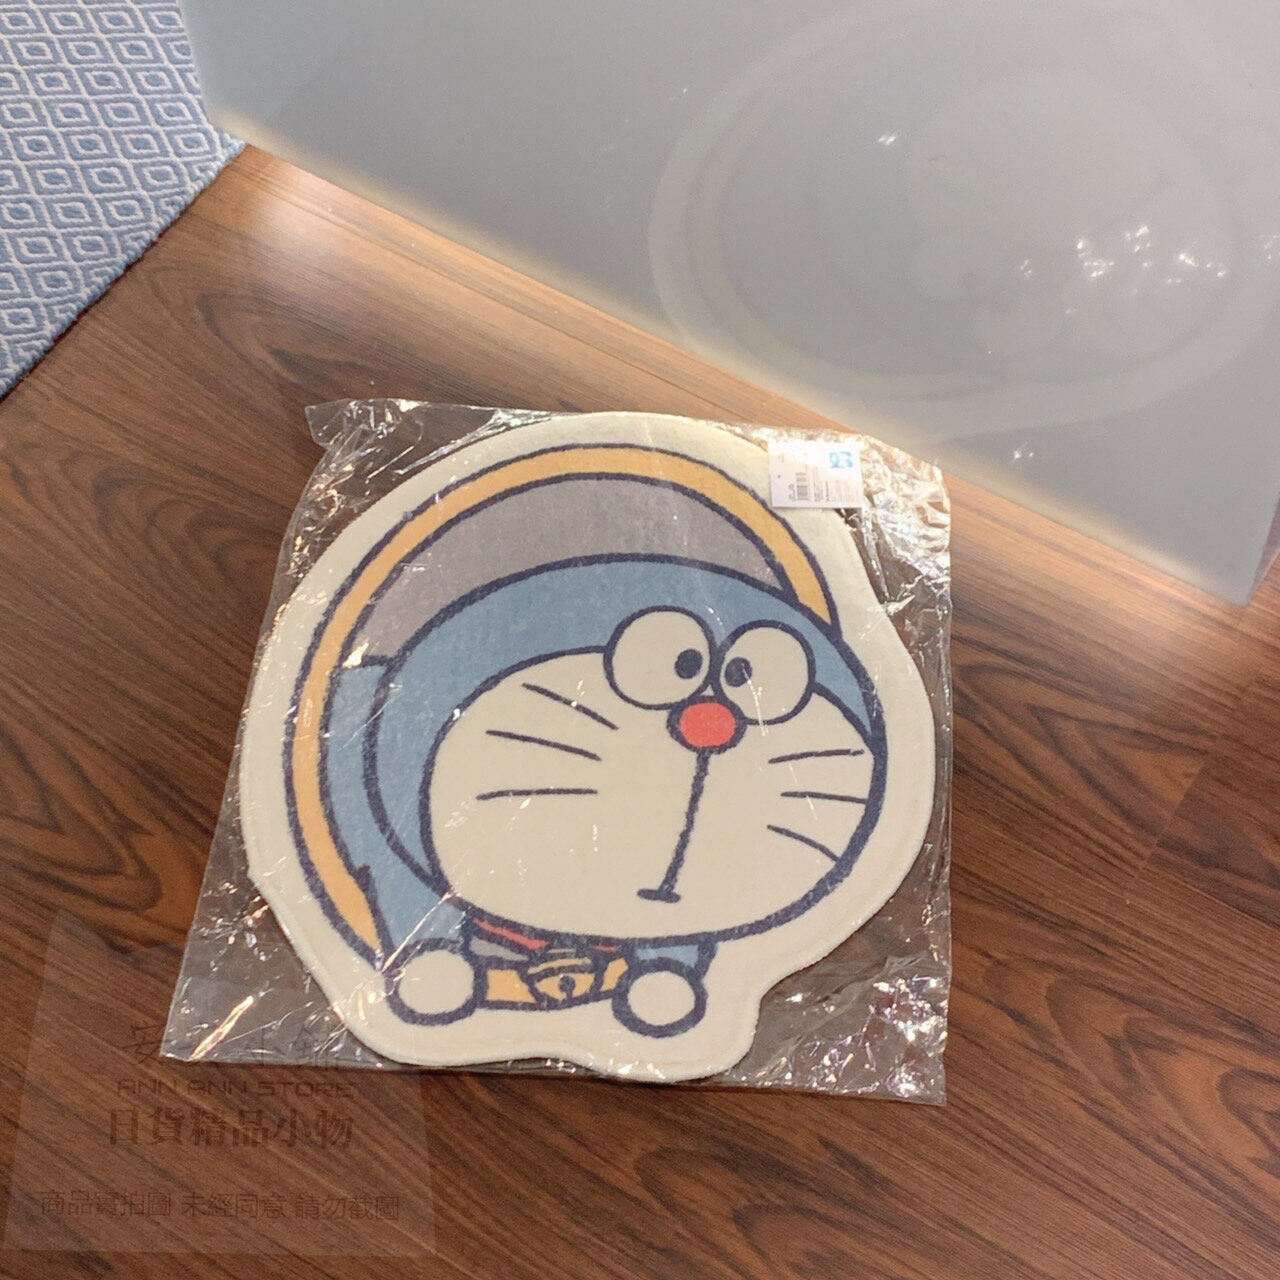 日本代購直送 D136 哆啦A夢 道具 地墊 玄關地墊 浴室地墊 I'm Doraemon 地墊 背面有止滑顆粒面